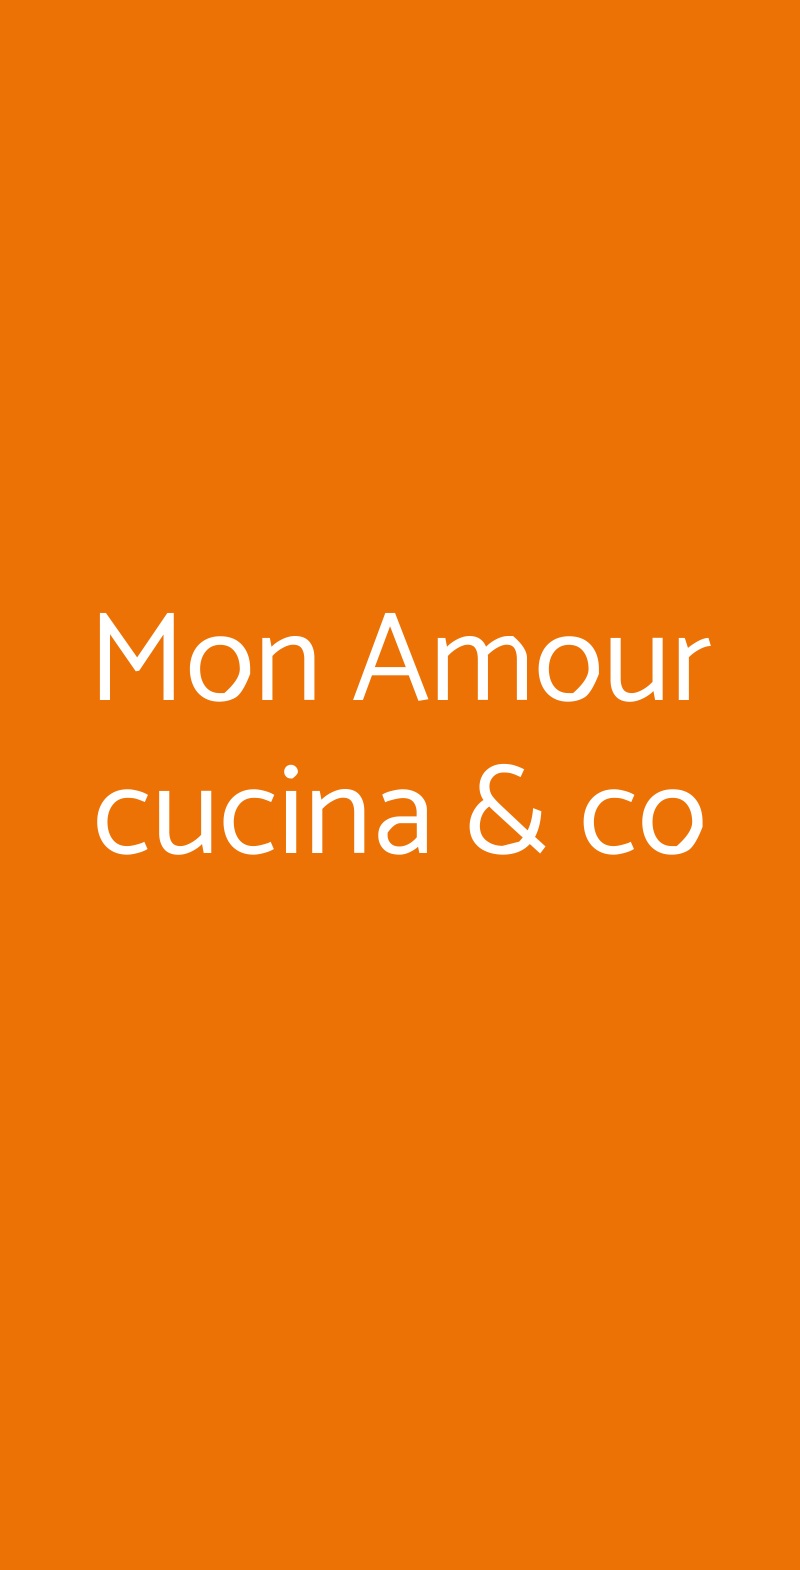 Mon Amour cucina & co Torino menù 1 pagina